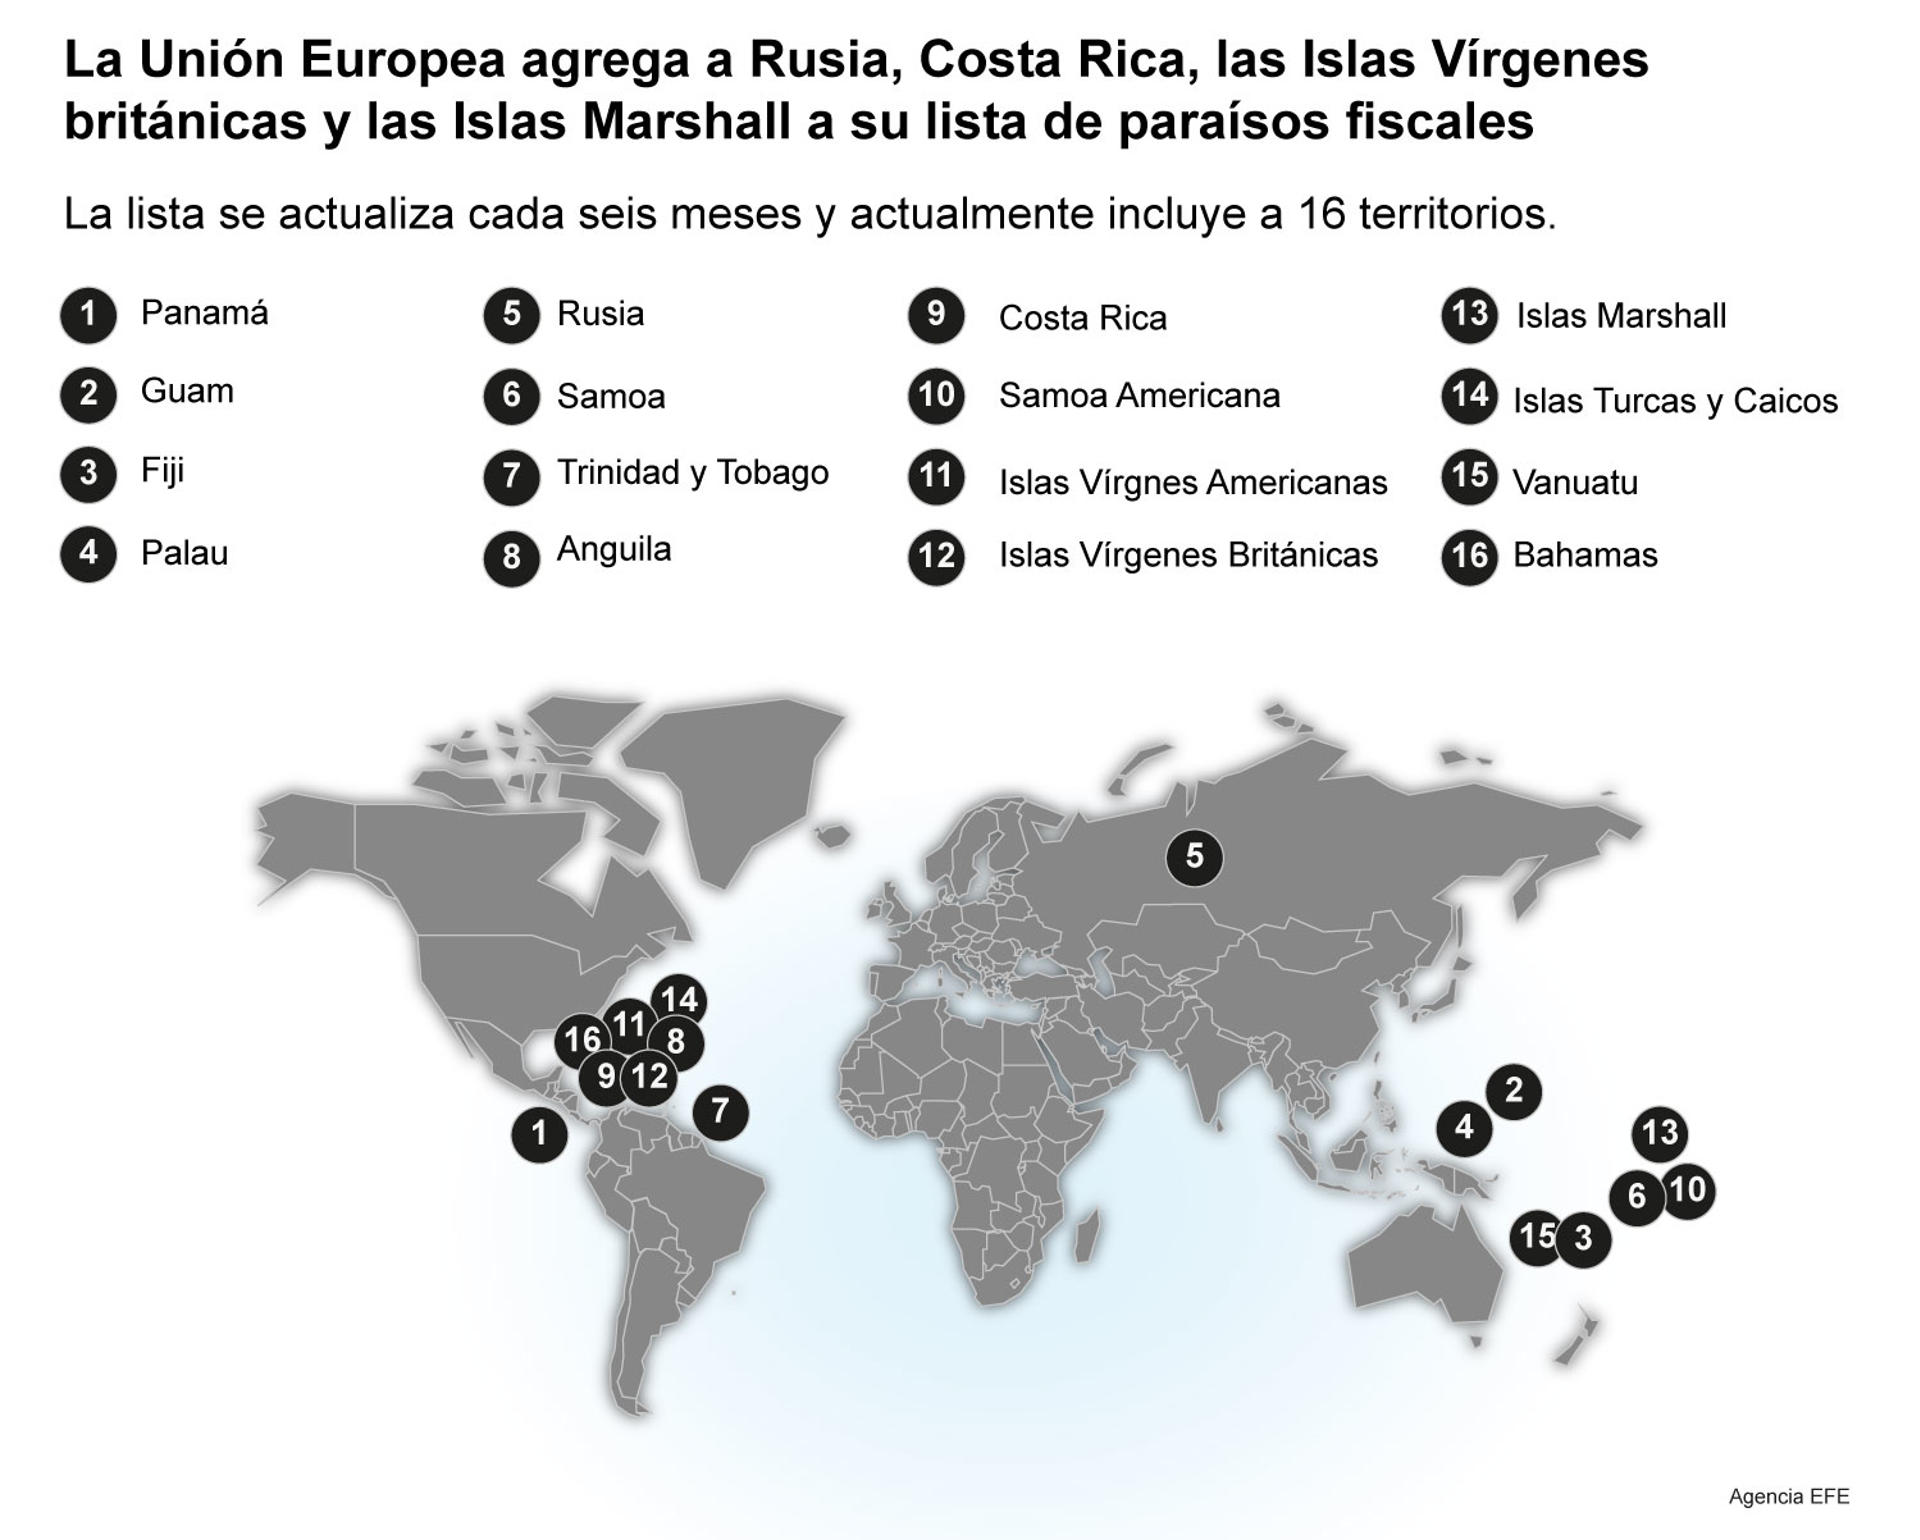 La Unión Europea agregó a Rusia y Costa Rica a su lista de paraísos fiscales